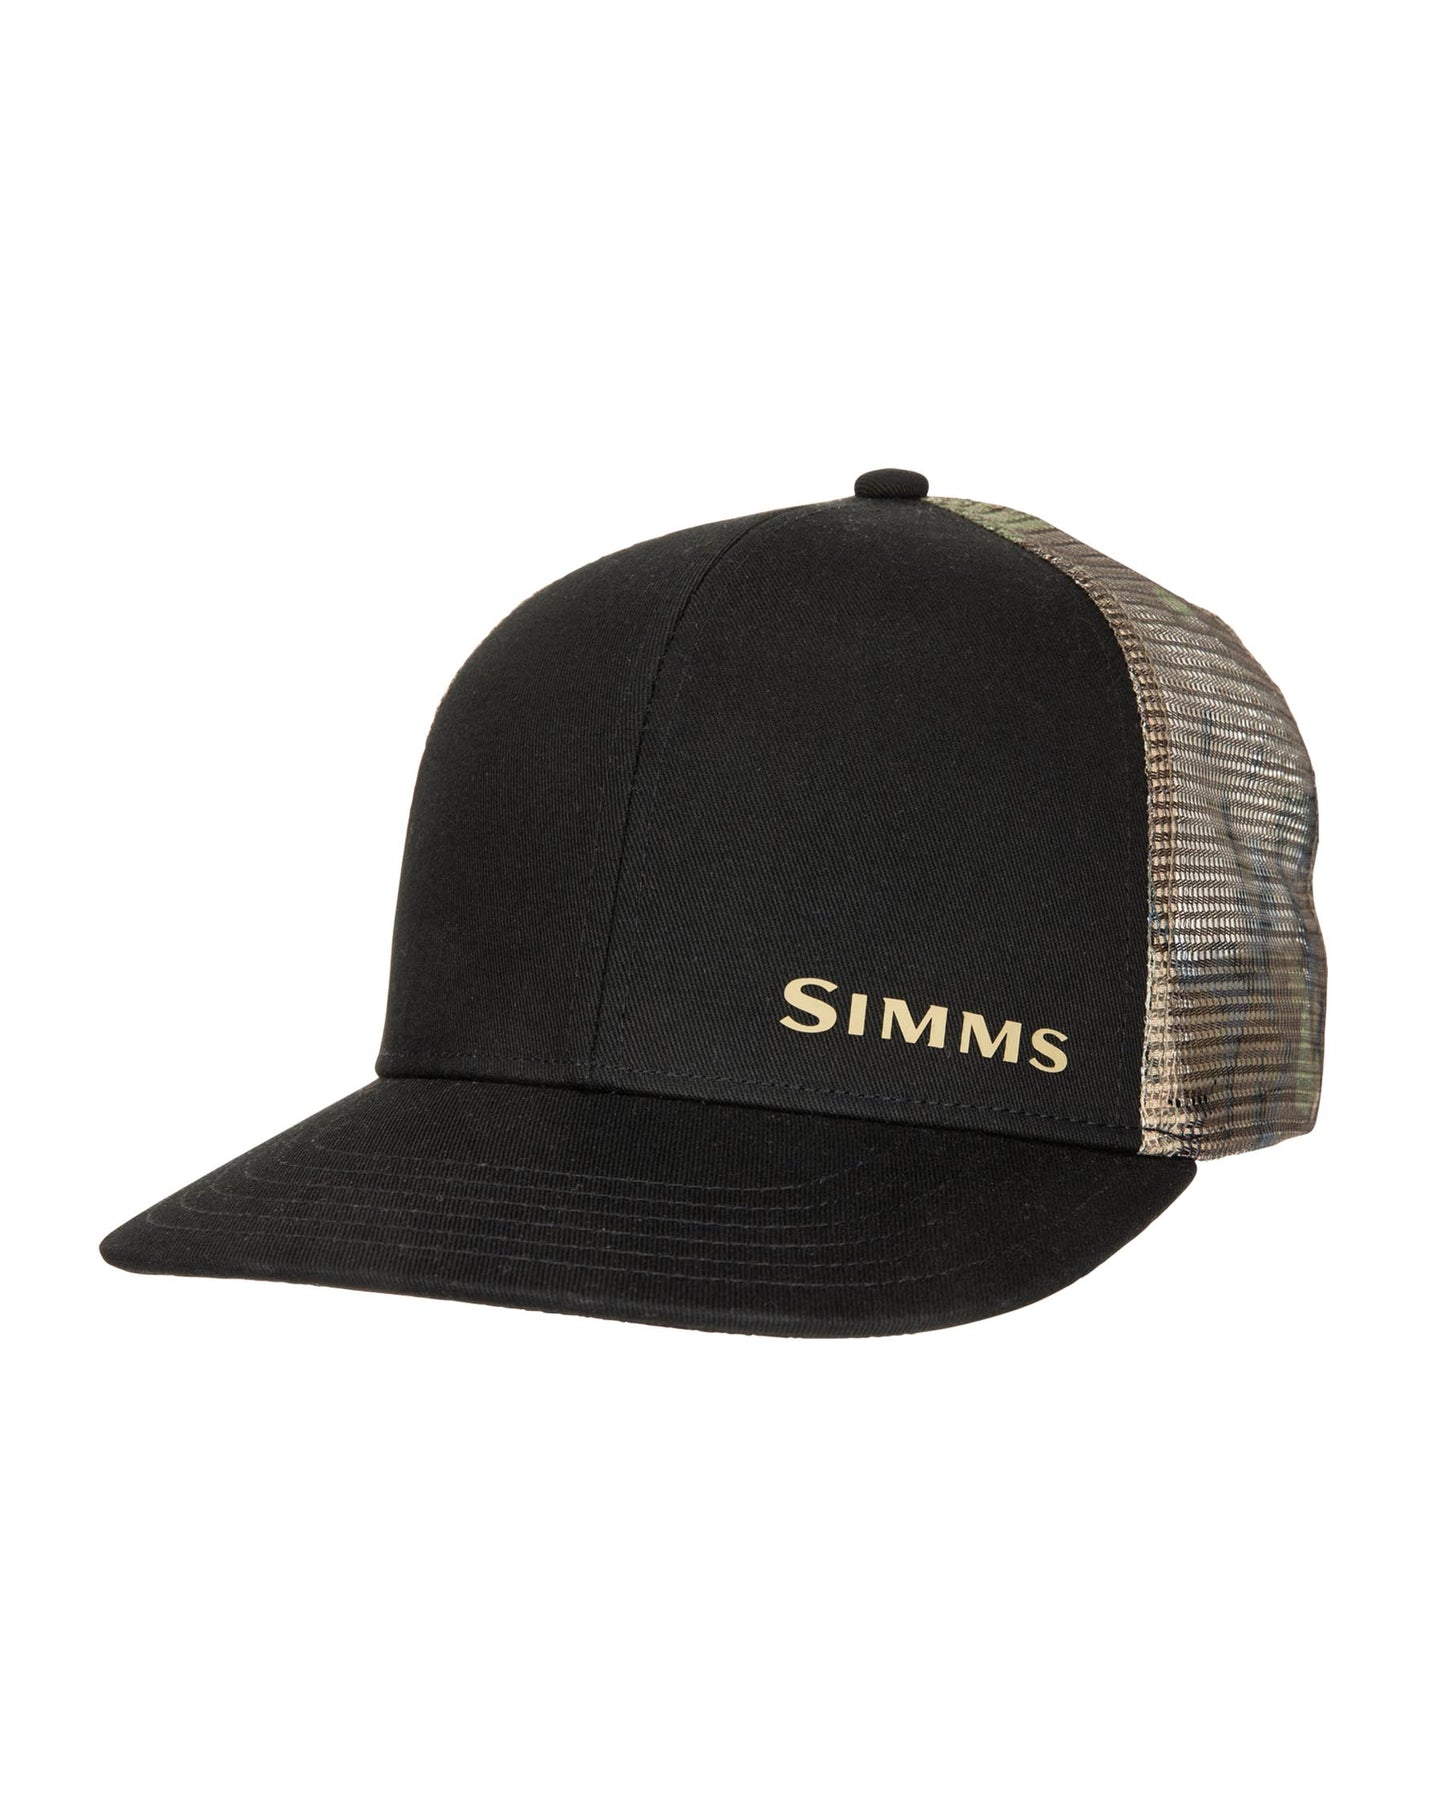 M's Simms ID Trucker - Riparian Camo